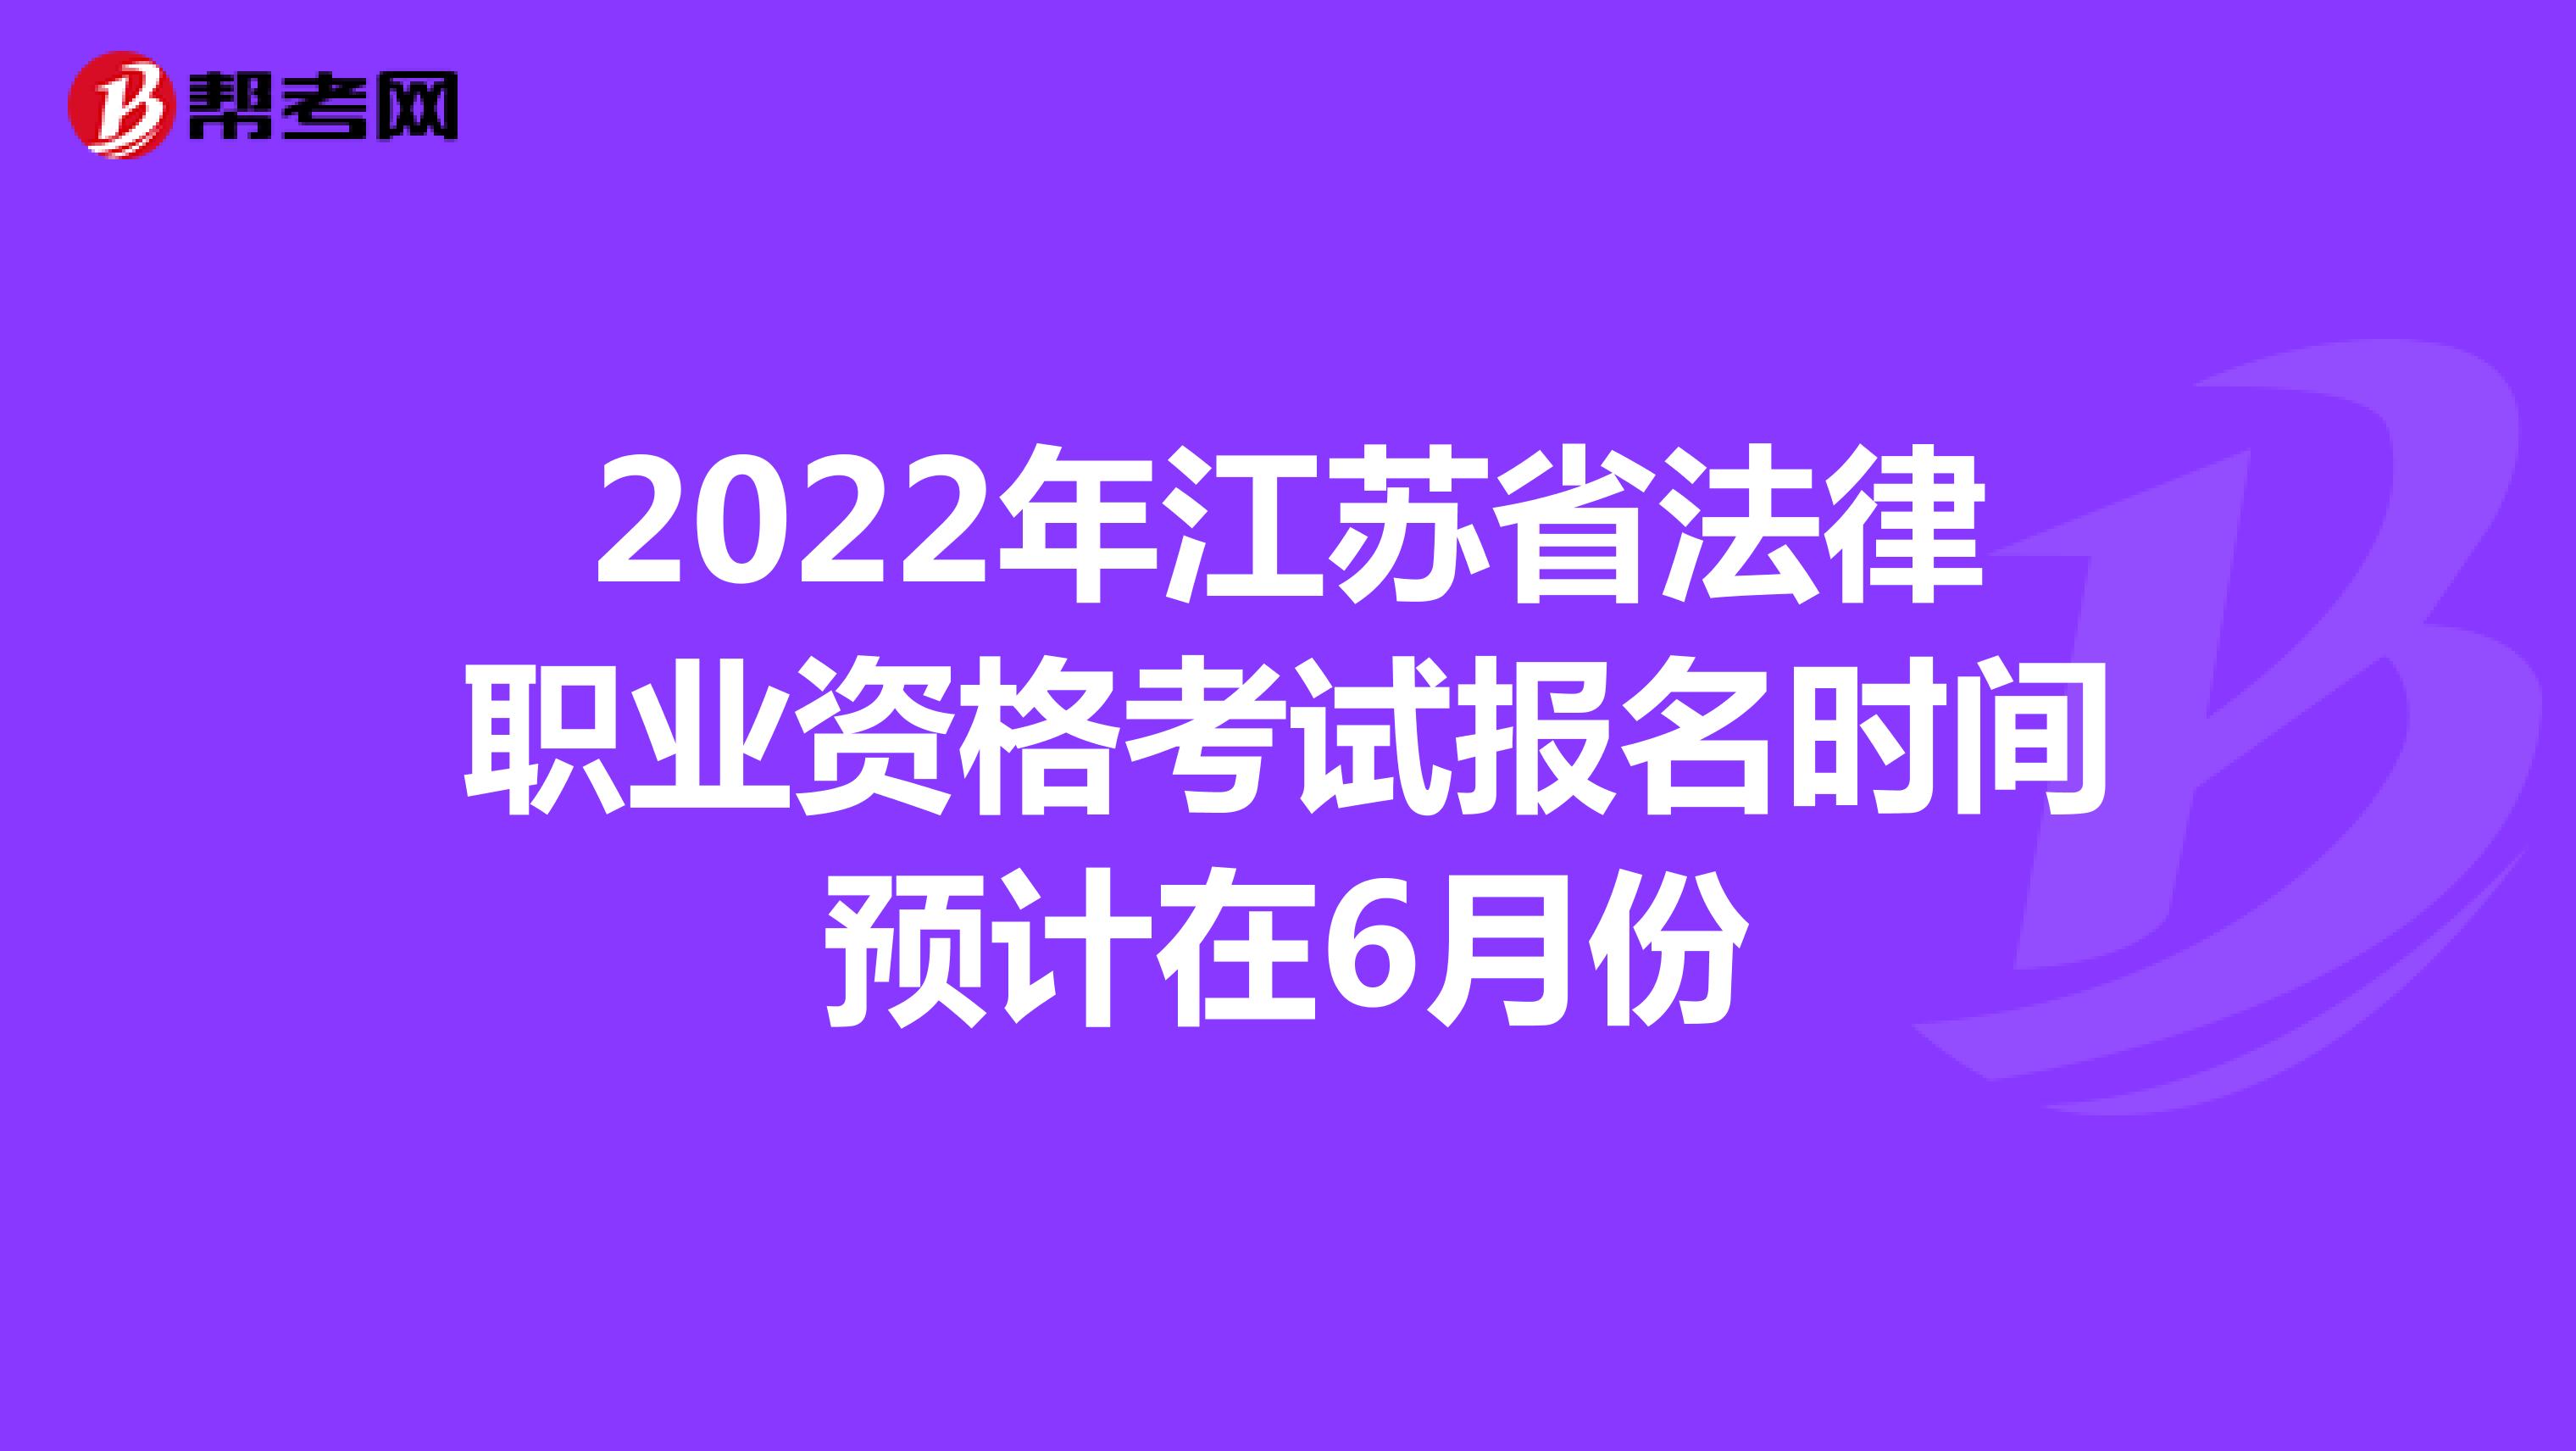 2022年江苏省法律职业资格考试报名时间预计在6月份